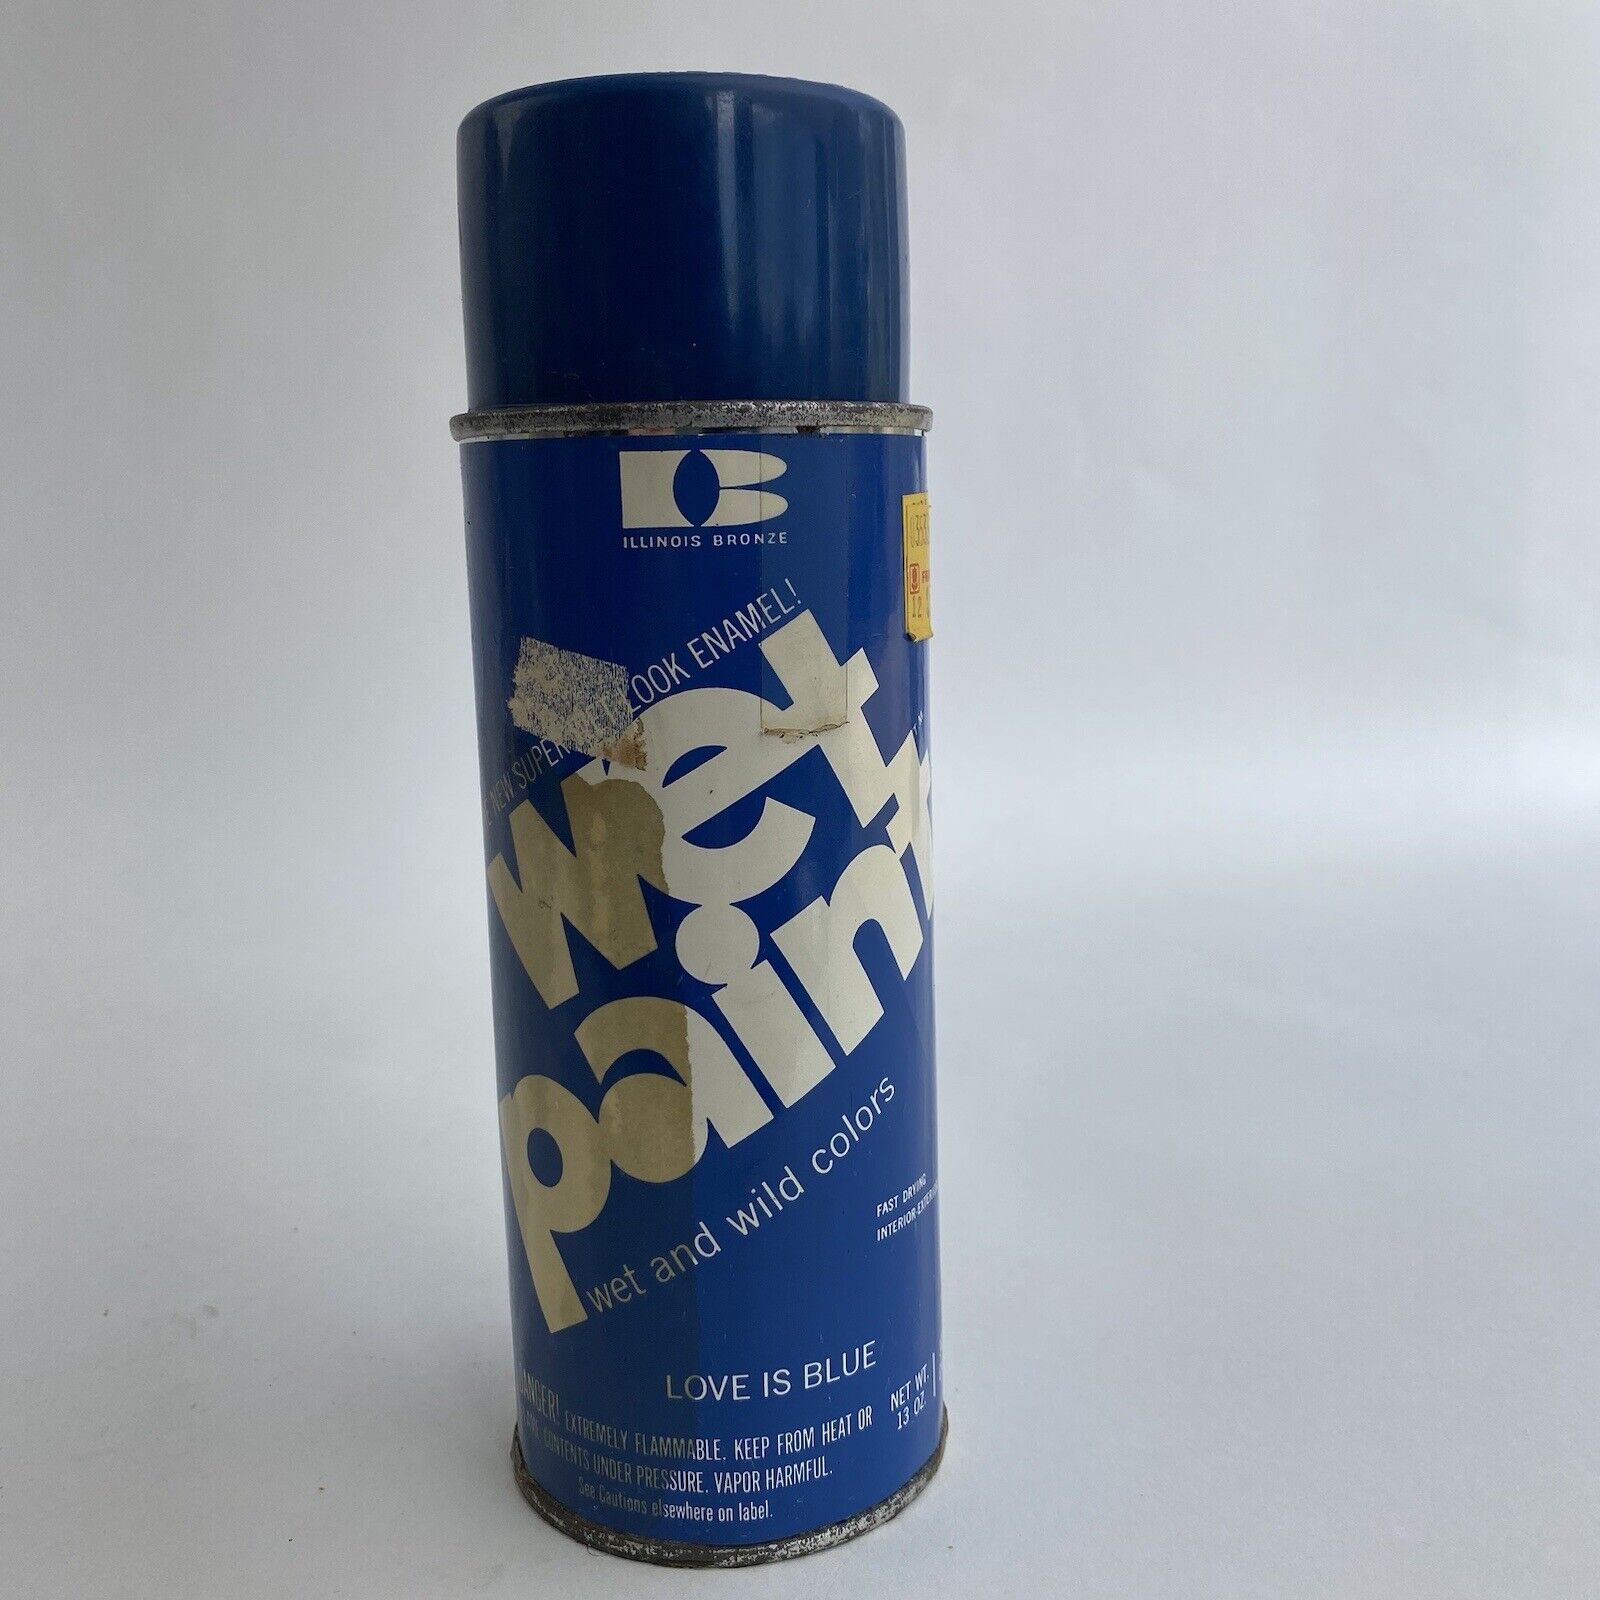 Vintage Illinois Bronze Wet Paint Spray Paint Can Love Is Blue Paper Label 1971